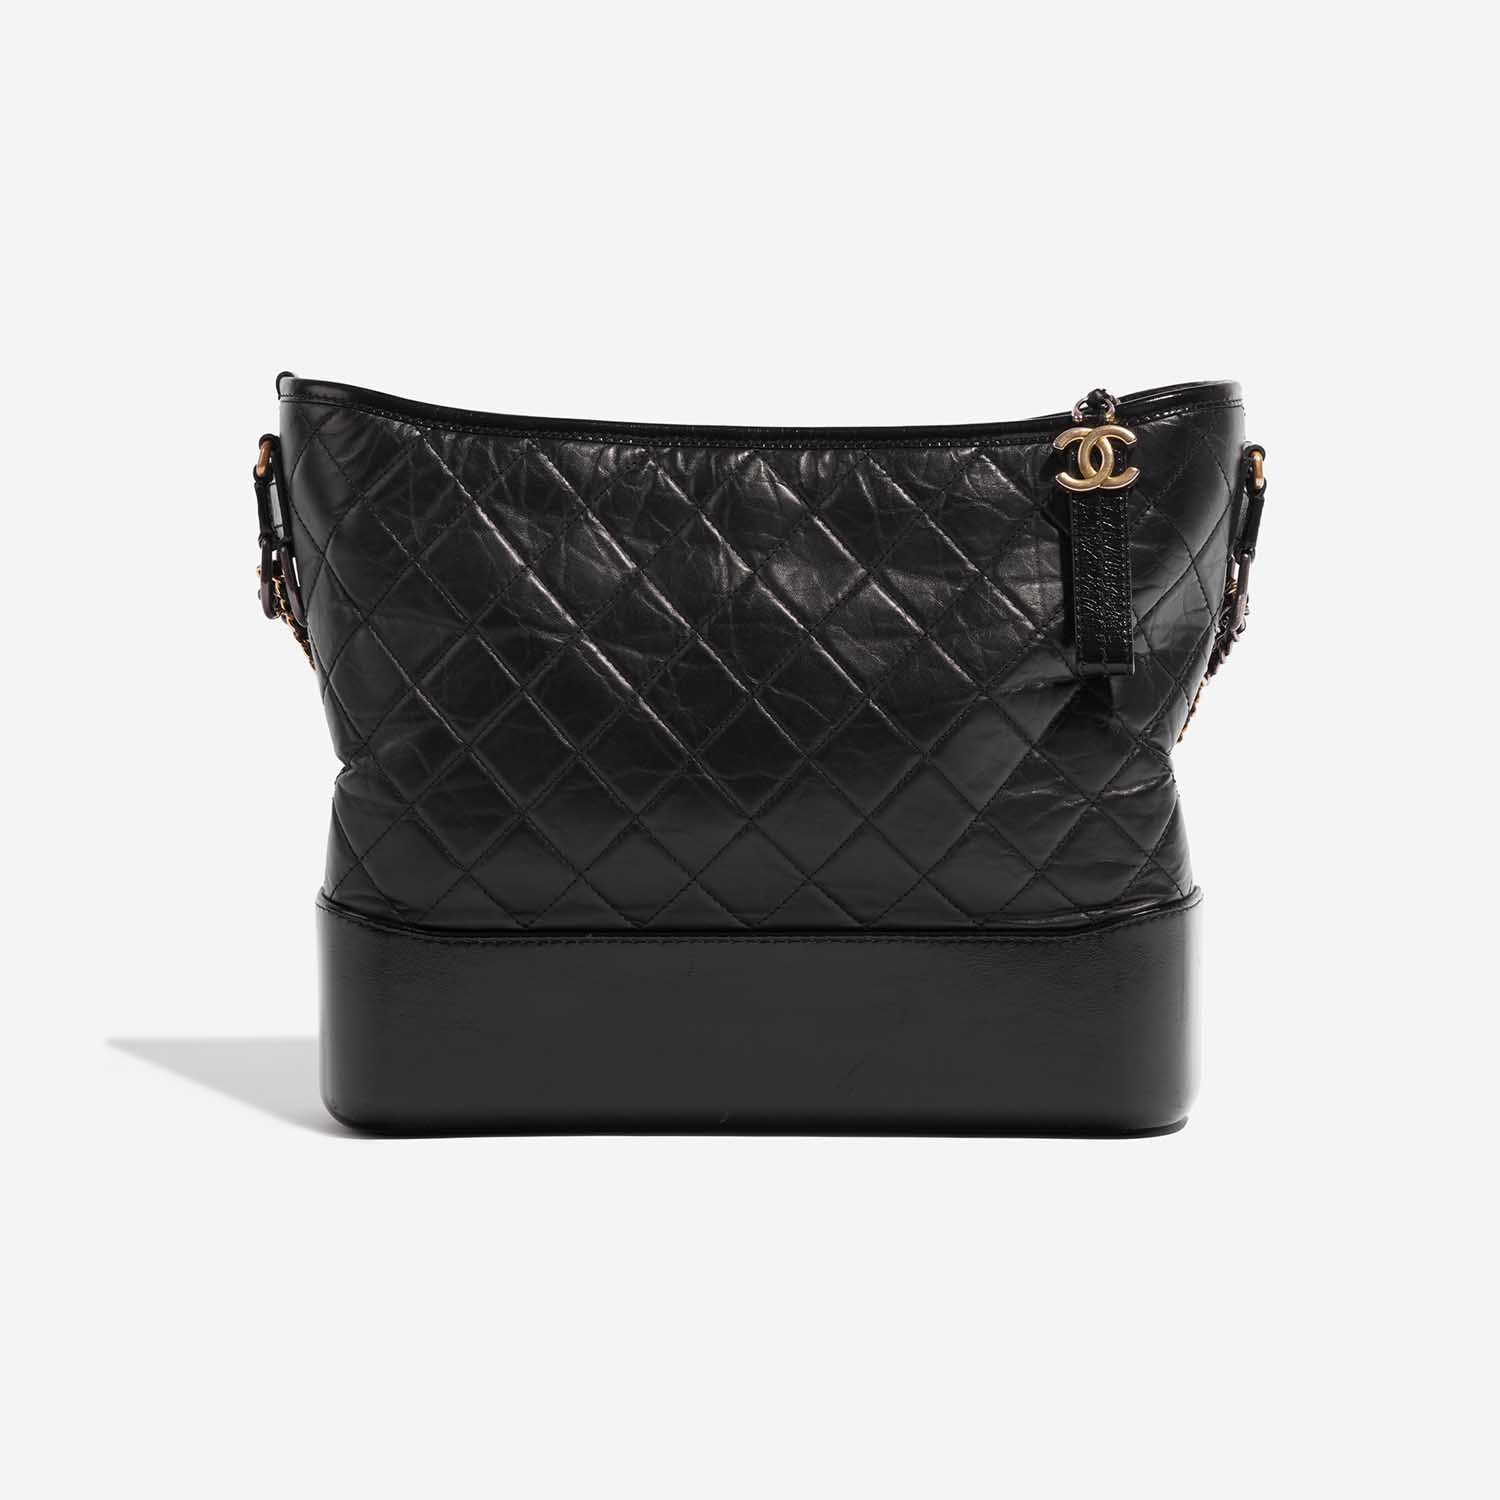 Sac d'occasion Chanel Gabrielle Large Calf Black Black Front | Vendez votre sac de créateur sur Saclab.com